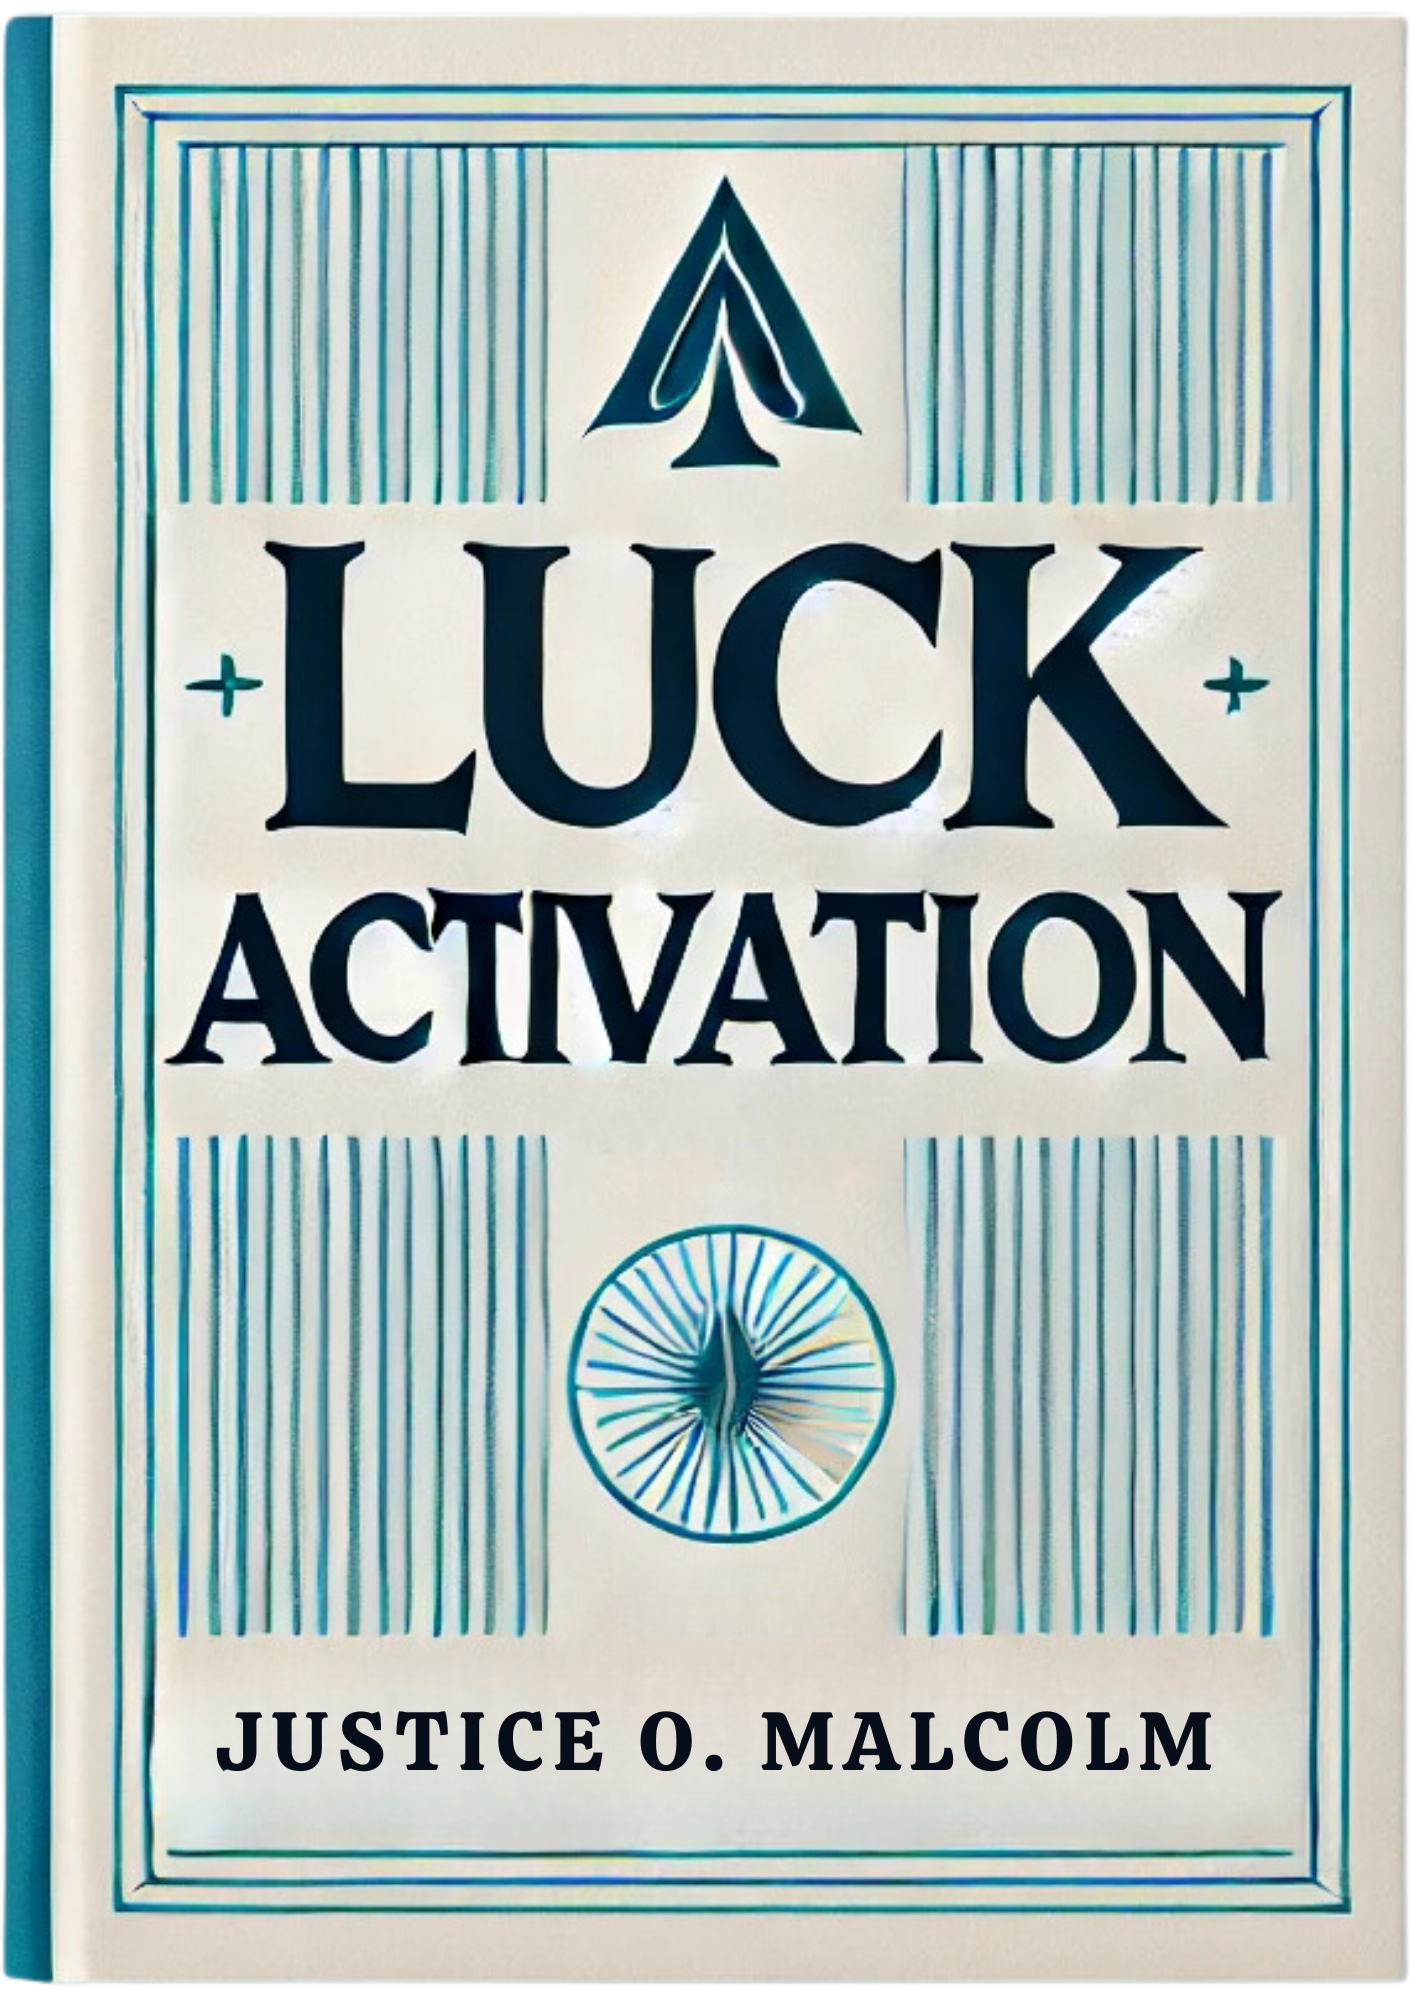 Luck Activation: How to Unlock Hidden Fortunes